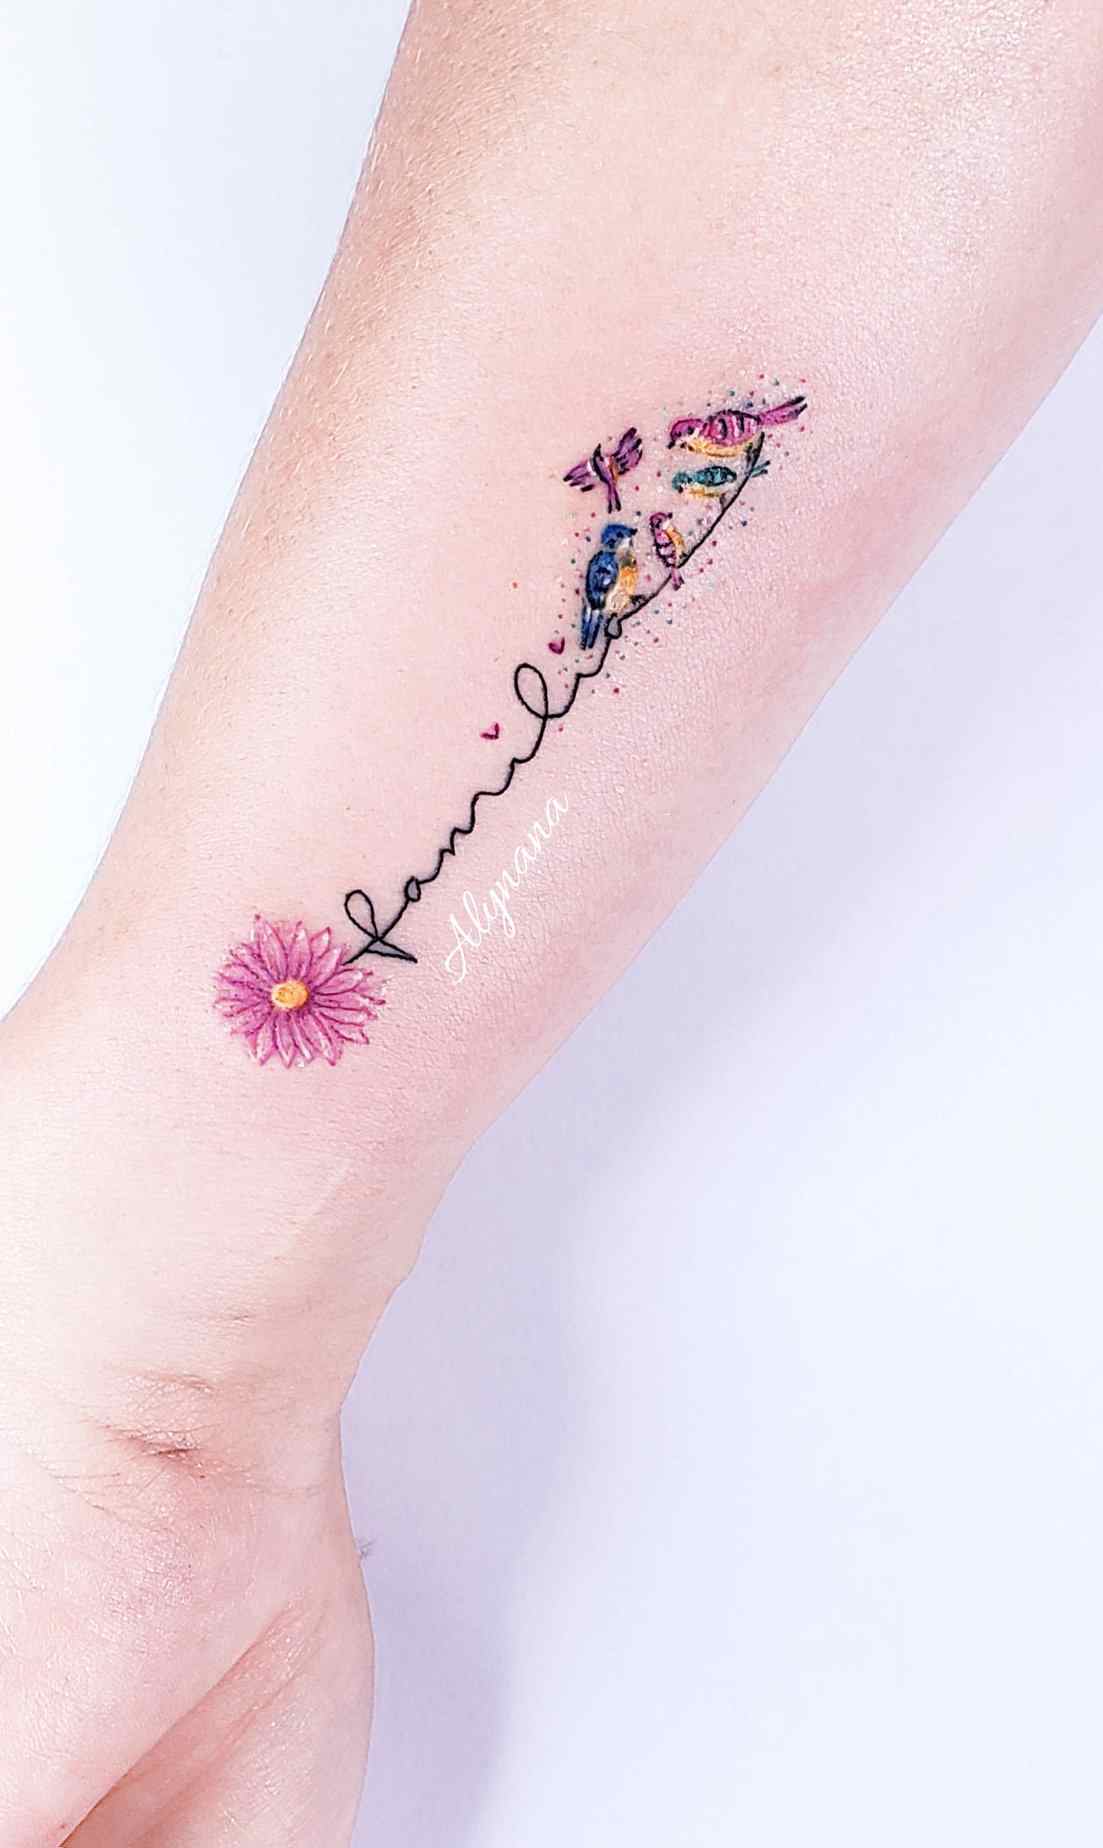 100 zarte, farbenfrohe Tattoos der Künstlerfamilie Alynana, dargestellt mit Vögeln auf dem Unterarm mit Blumen